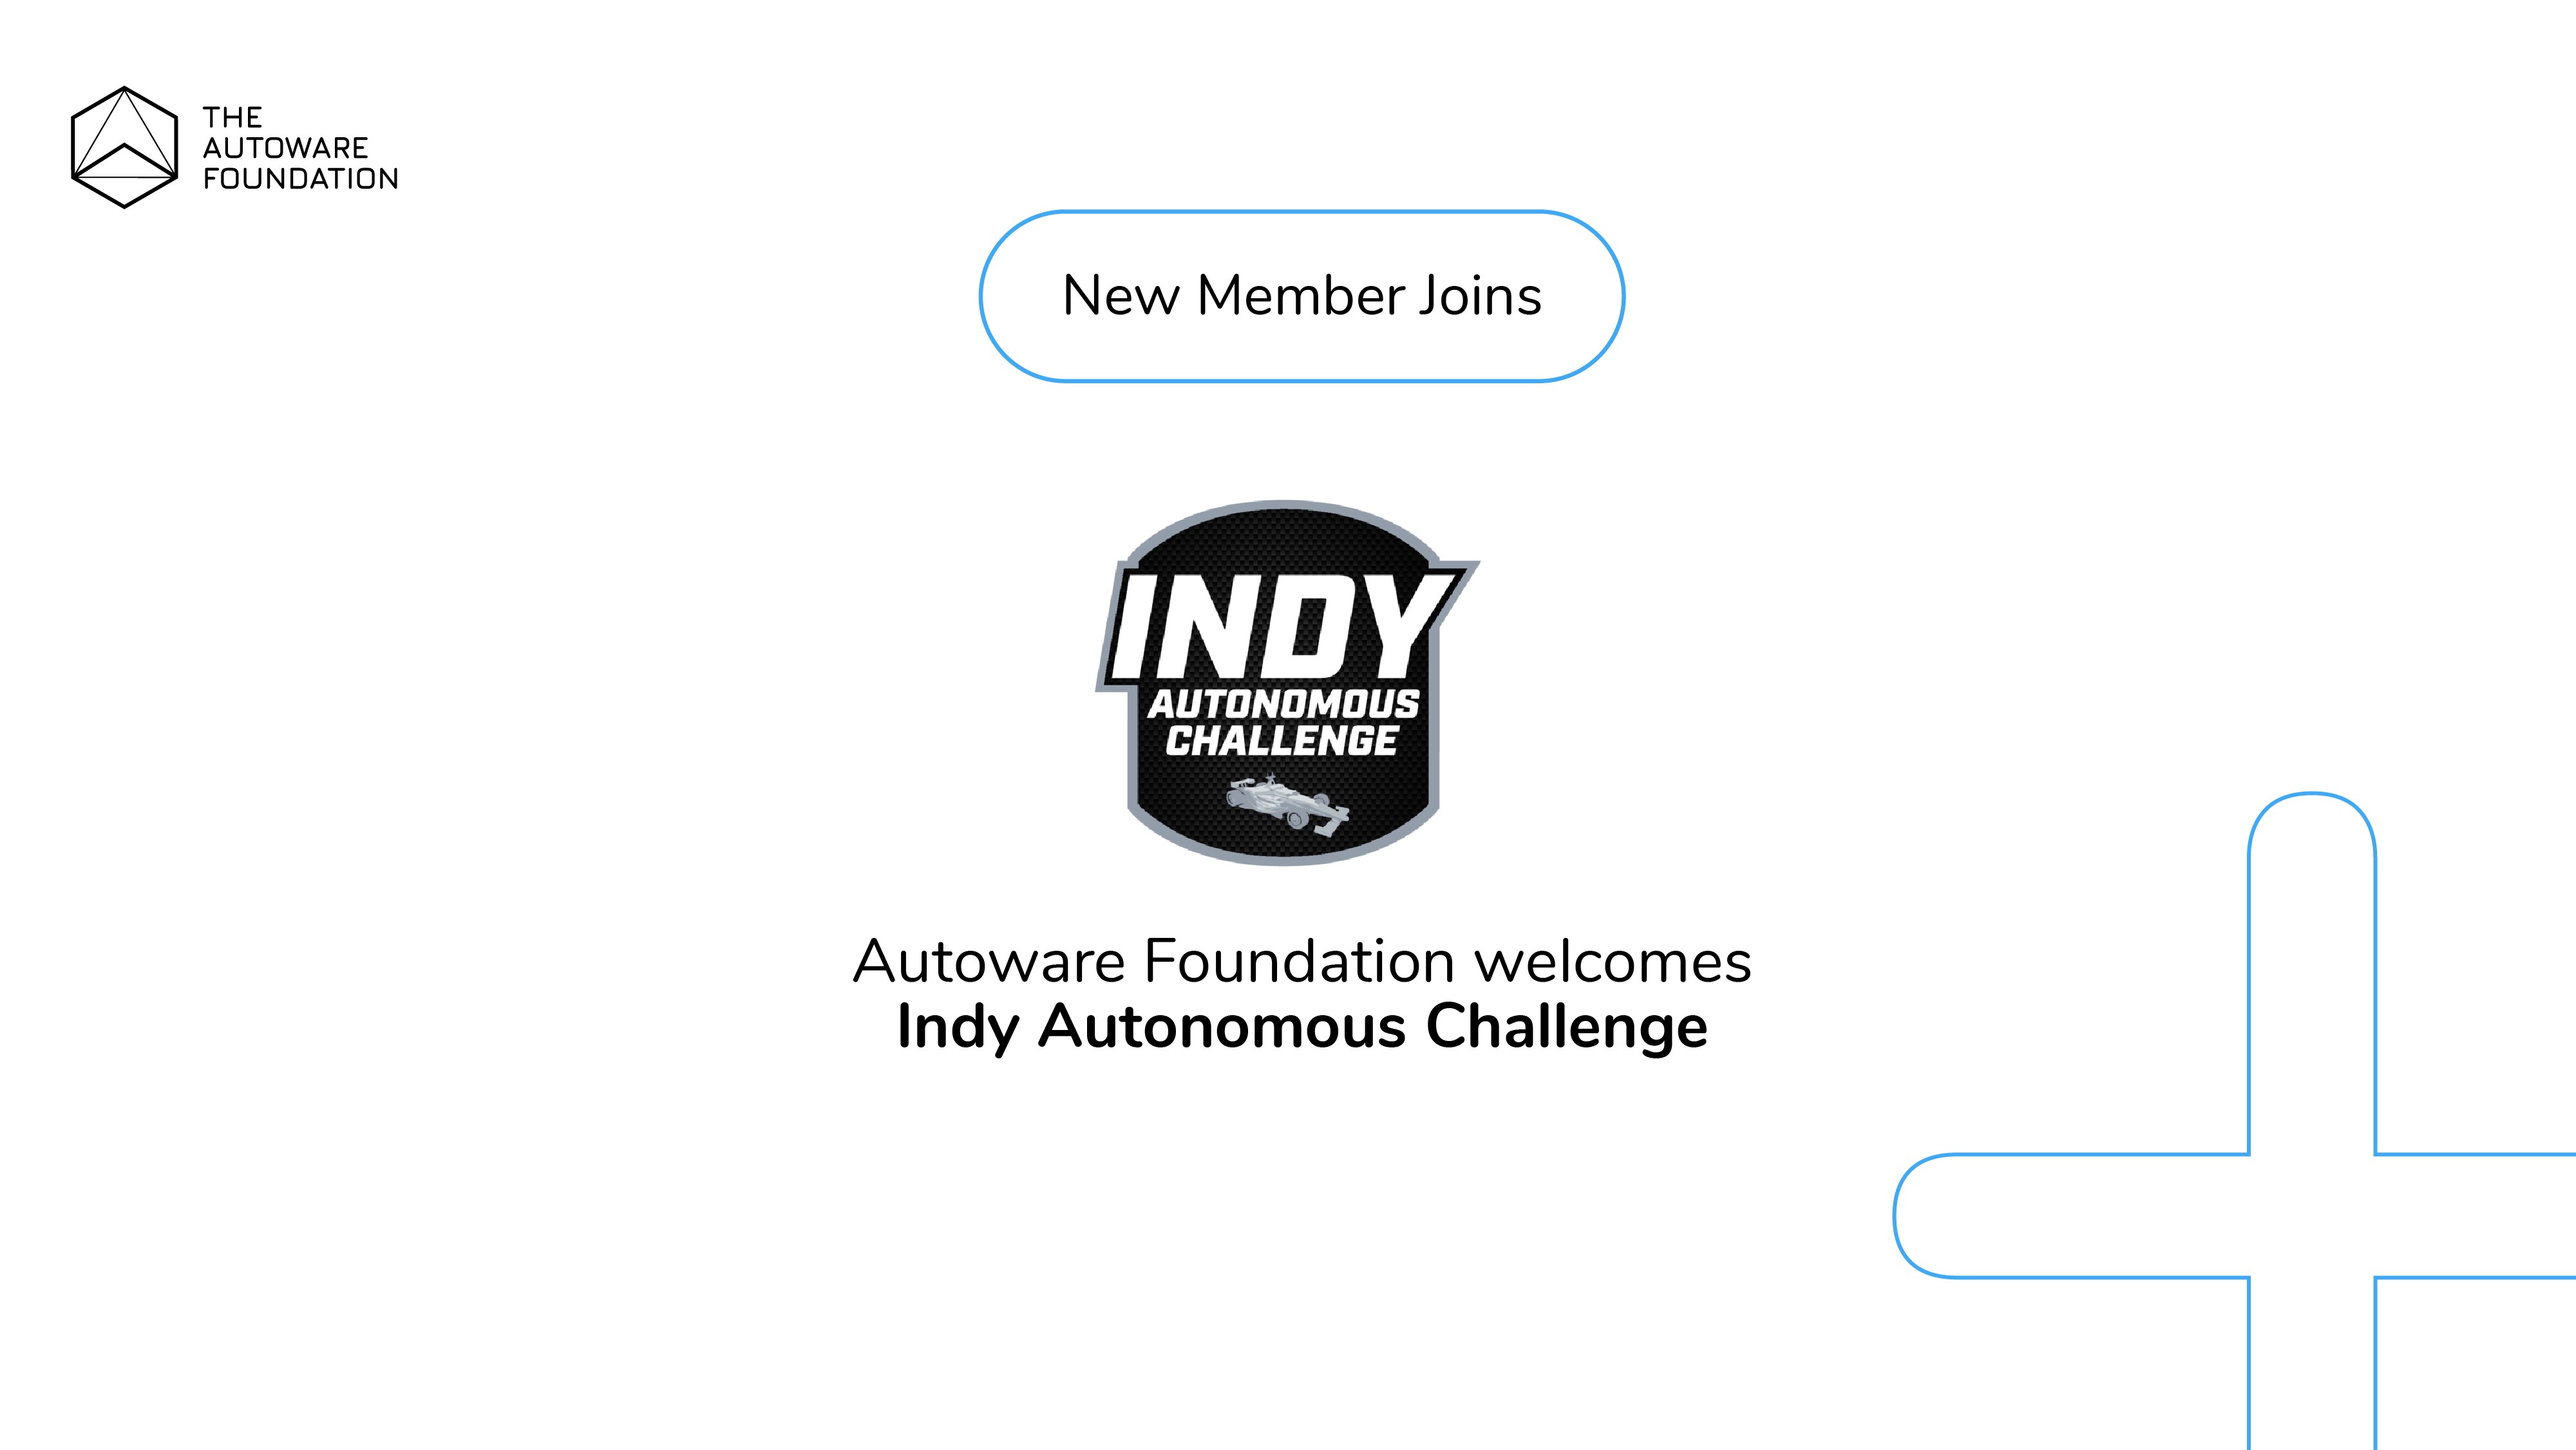 Indy Autonomous Challenge (IAC) joins the Autoware Foundation!